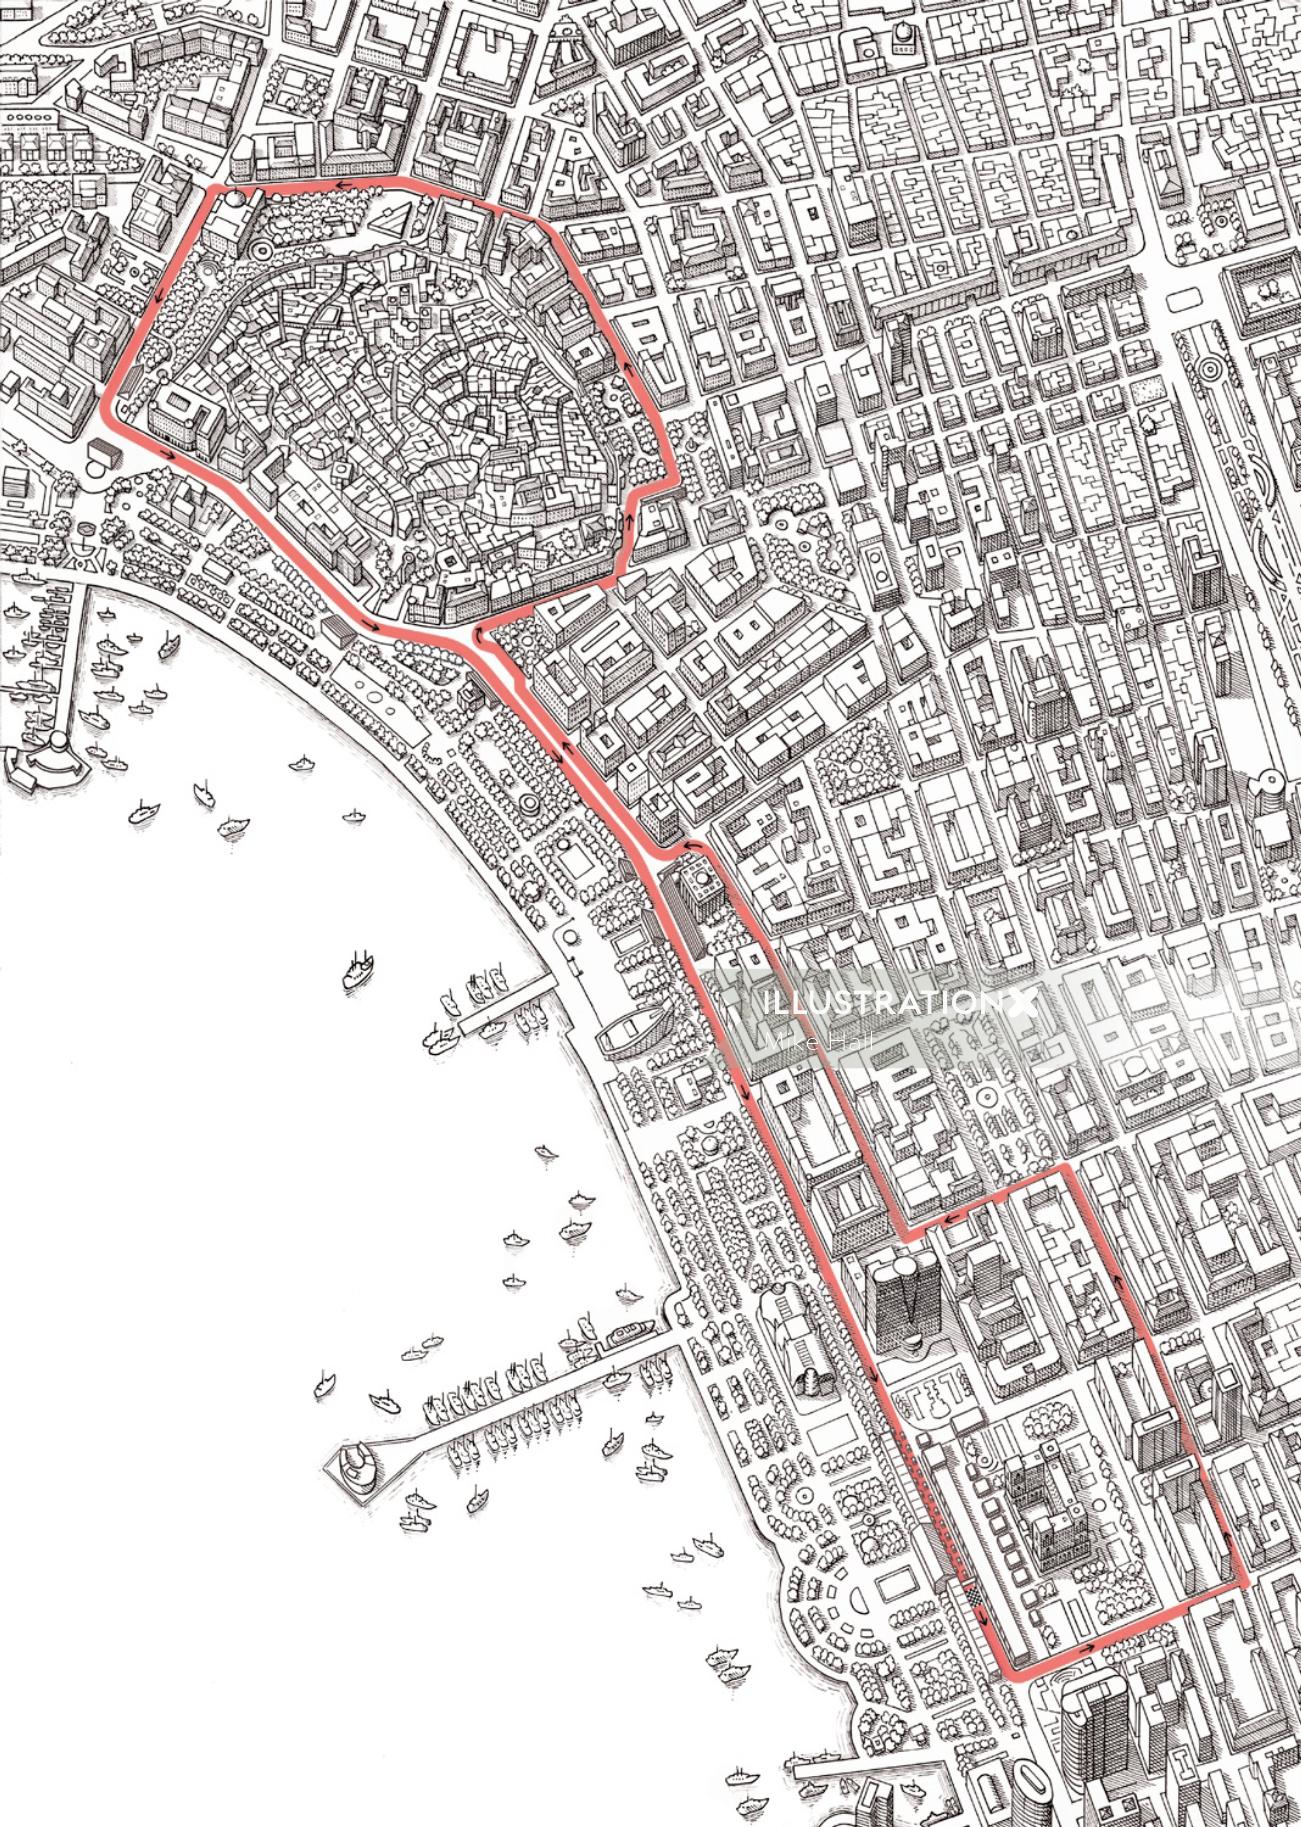 バクーF1ストリートの白黒サーキットマップデザイン